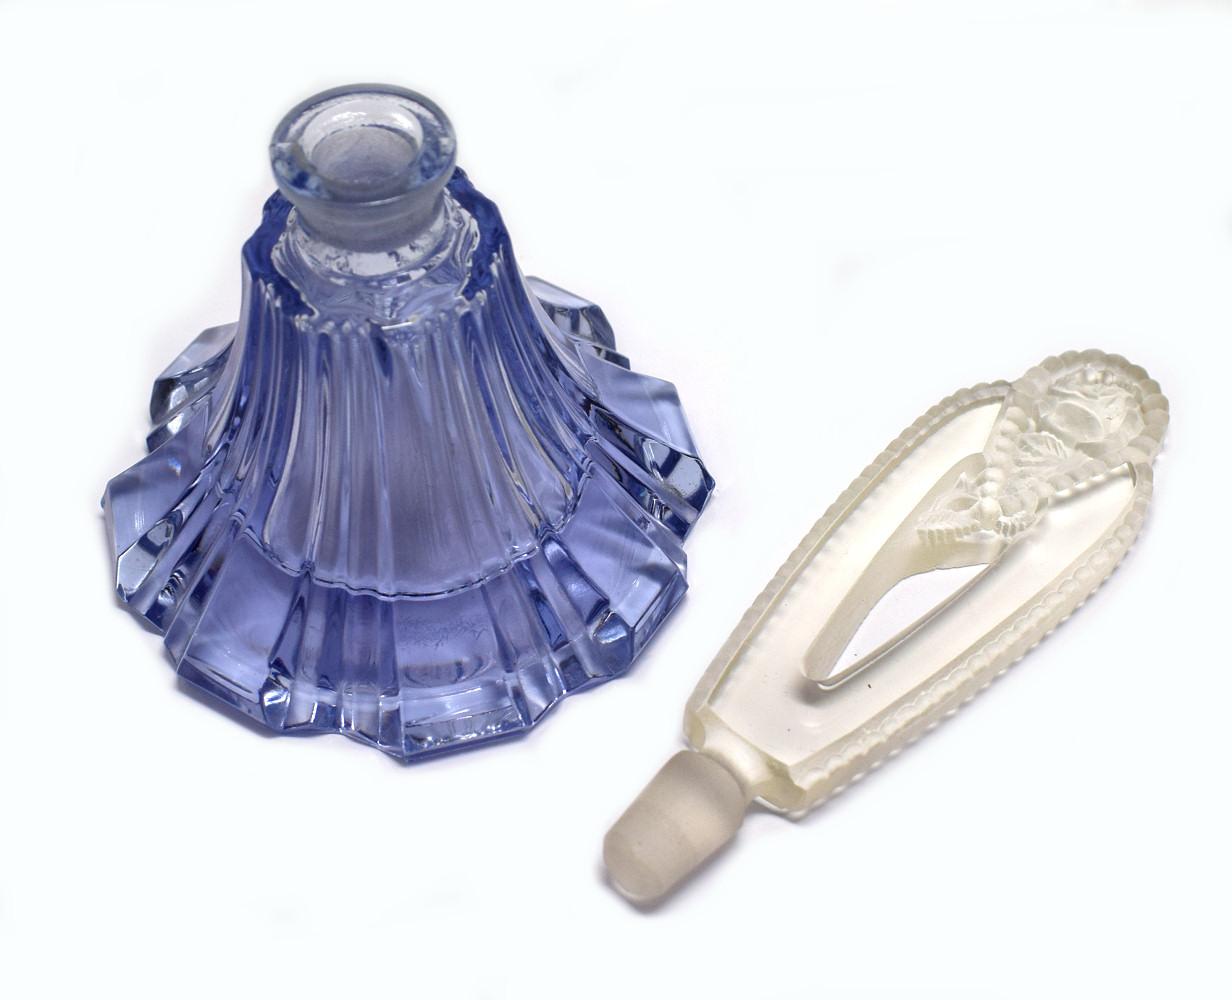 Wir bieten Ihnen dieses stilvolle Parfümfläschchen aus blauem und klarem Glas aus den 1930er Jahren im Art déco-Stil. Schöner Artikel ohne Schäden, nur geringe Gebrauchsspuren. Der Stöpsel ist mit einer reliefartig geprägten Rose versehen und passt